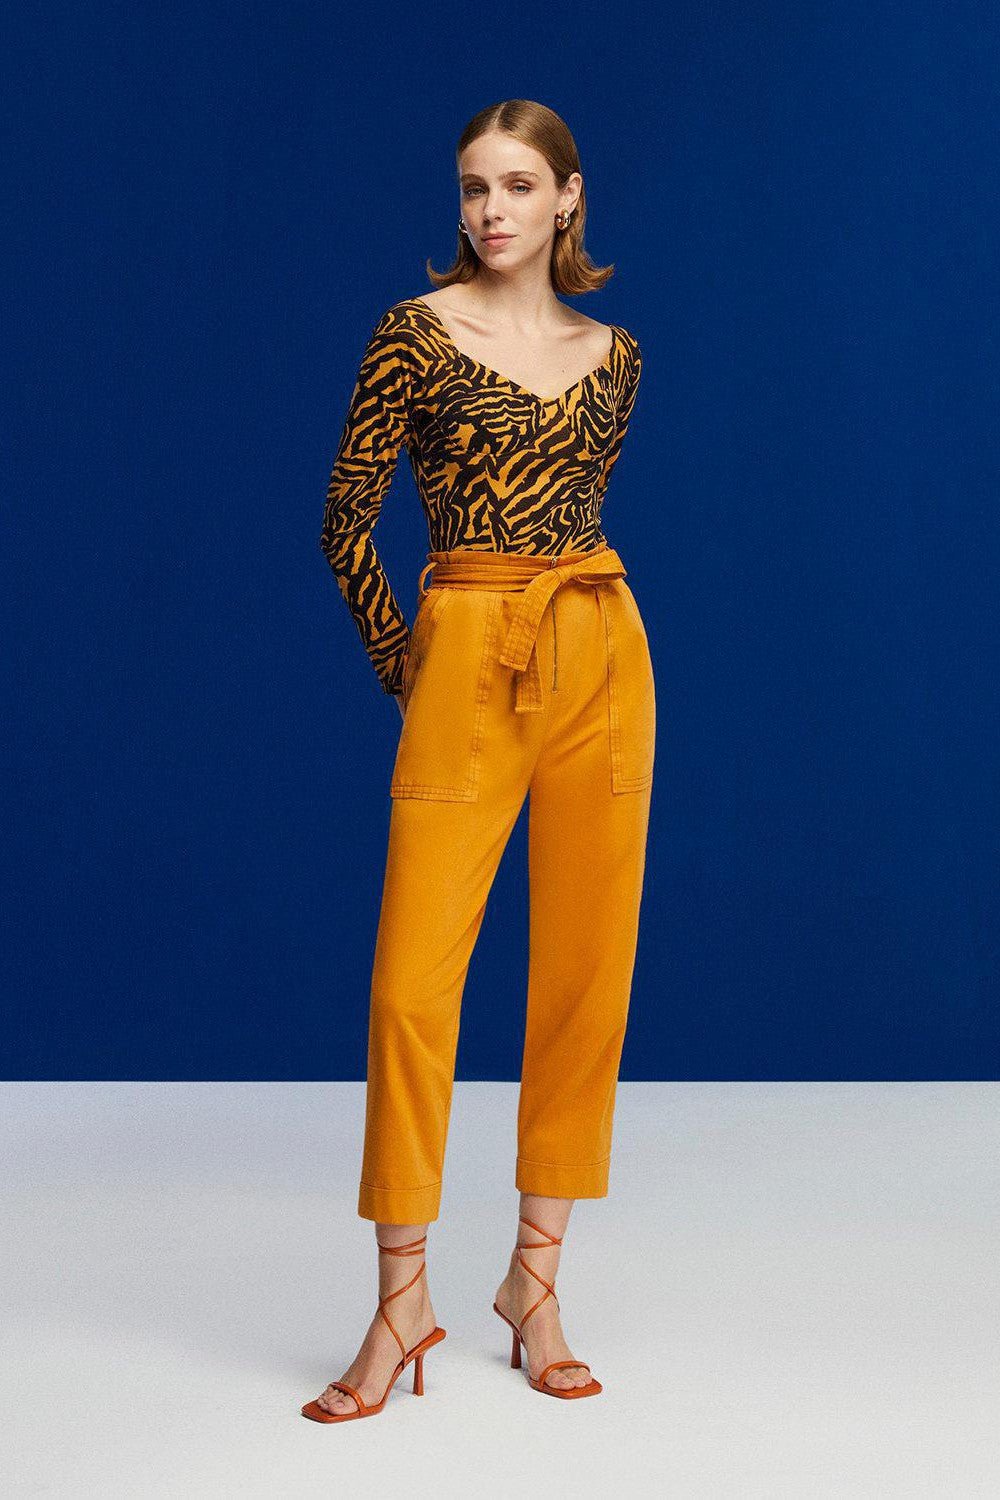 Tiger Print Bodysuit - Mack & Harvie